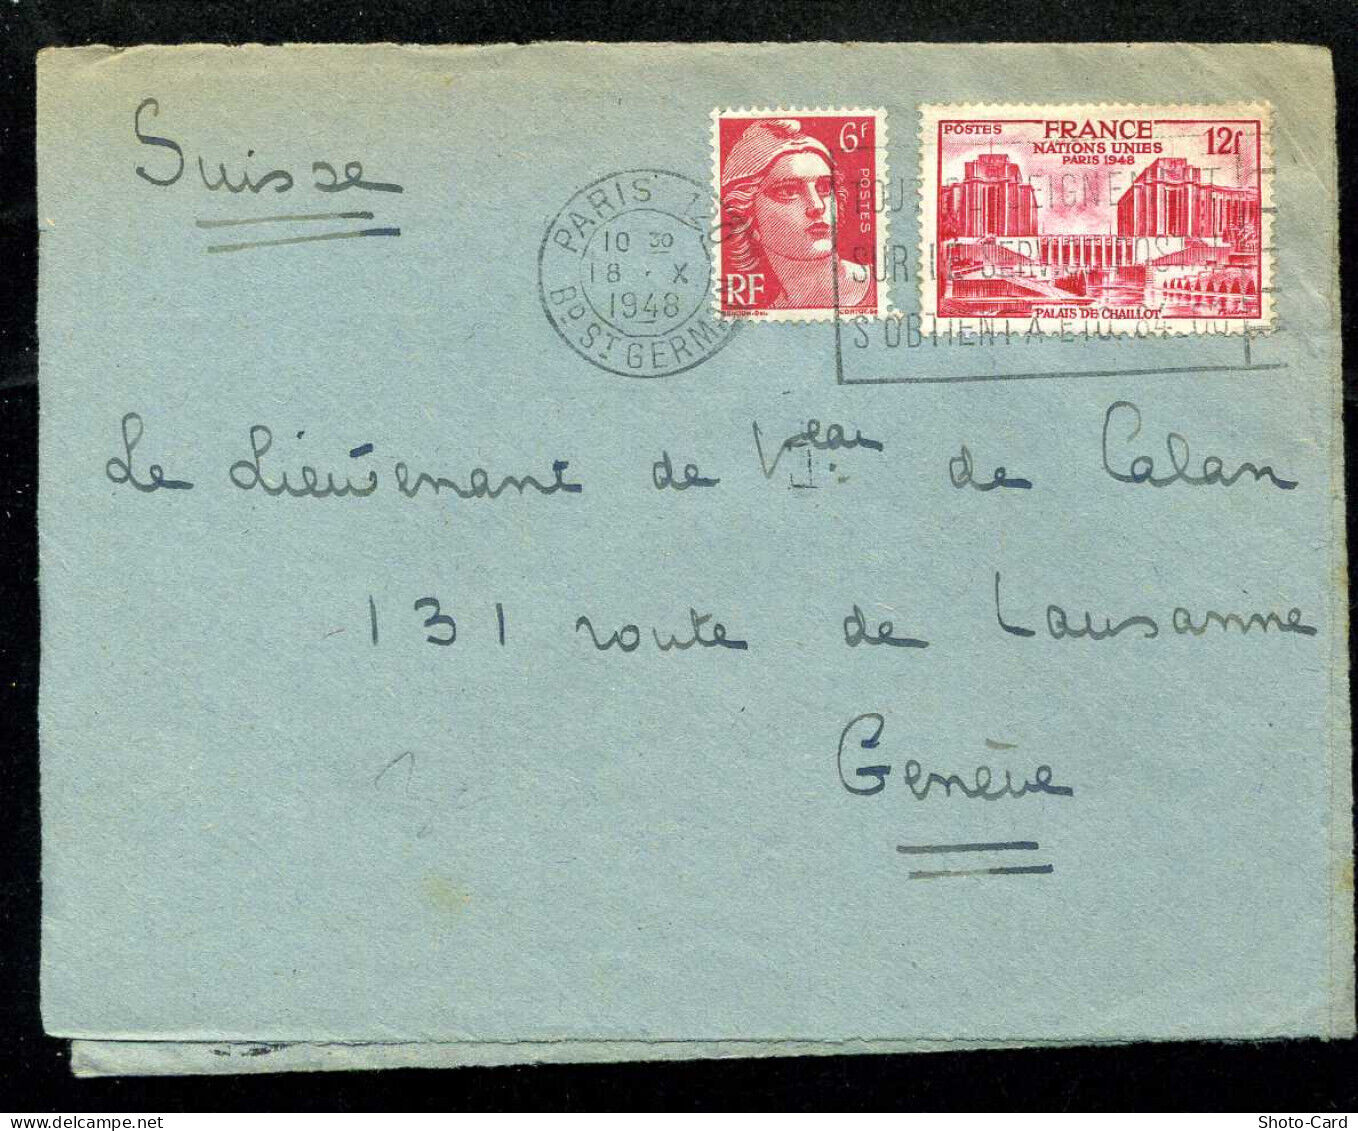 Paris bd st germain 18-10-1948 flame n